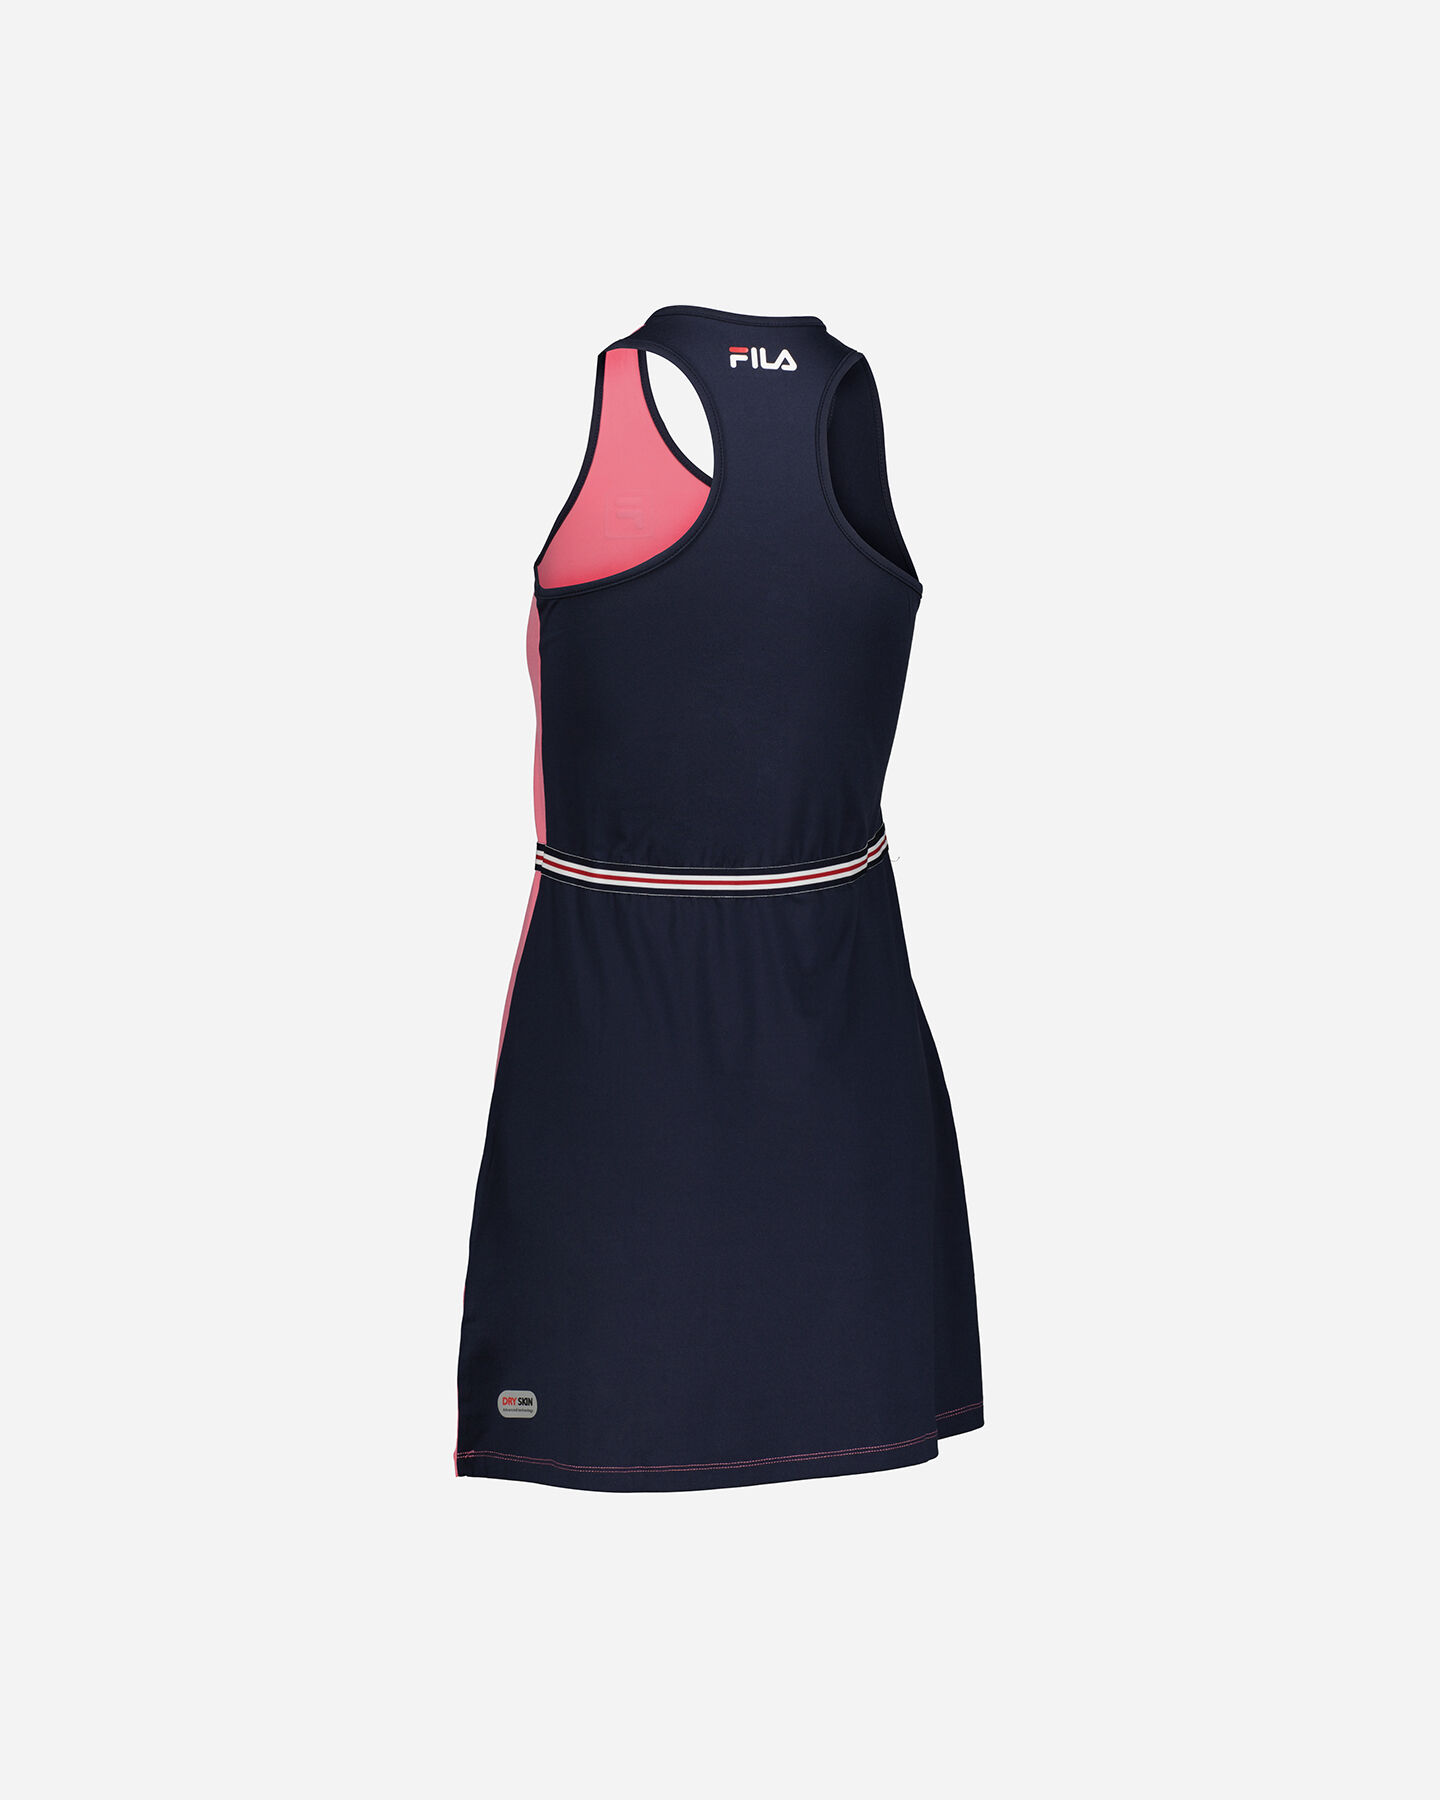  Abbigliamento tennis FILA CLASSIC TENNIS W S4100454|410/935|M scatto 1